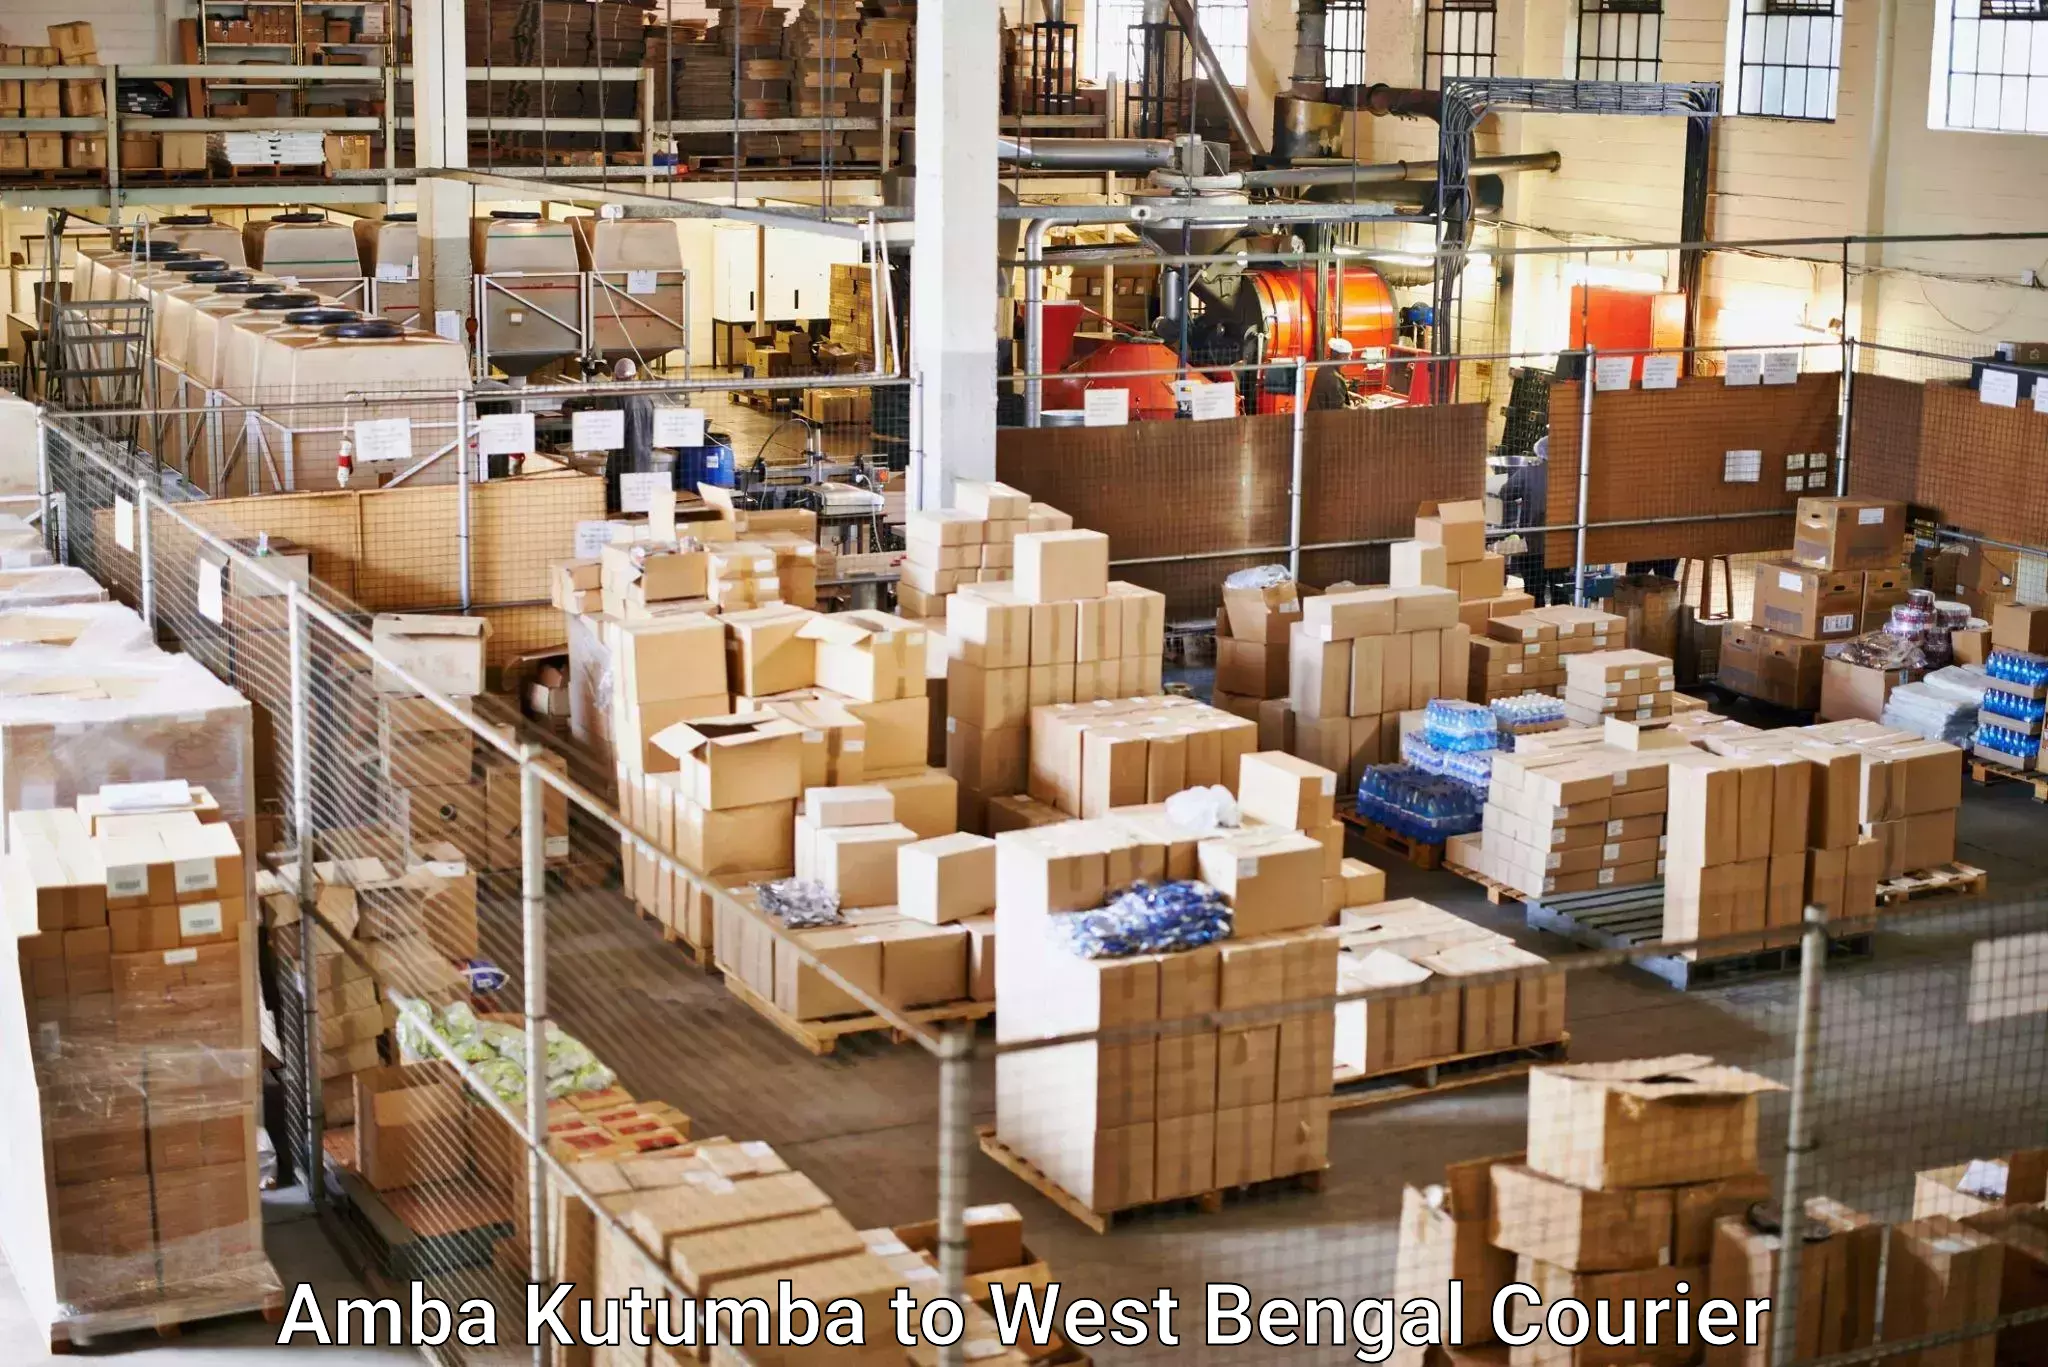 Fragile item shipping in Amba Kutumba to West Bengal